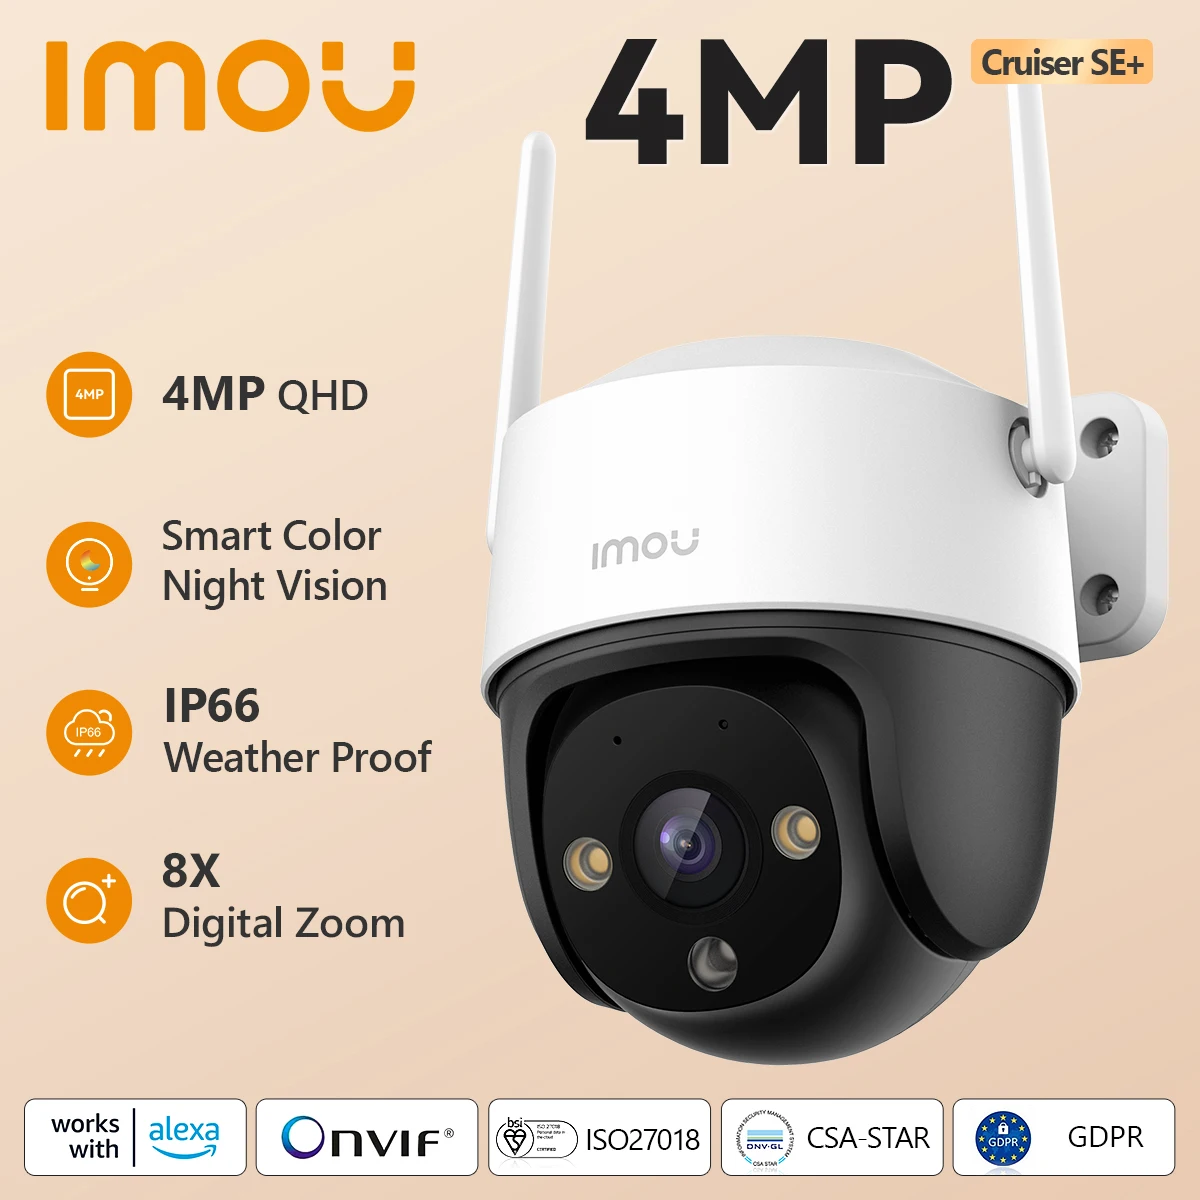 Imou cruiser se + 1080p/4mp outdoor wifi kamera nachtsicht ip66 wetterfest 8x digital zoom ai menschliche erkennung monitor